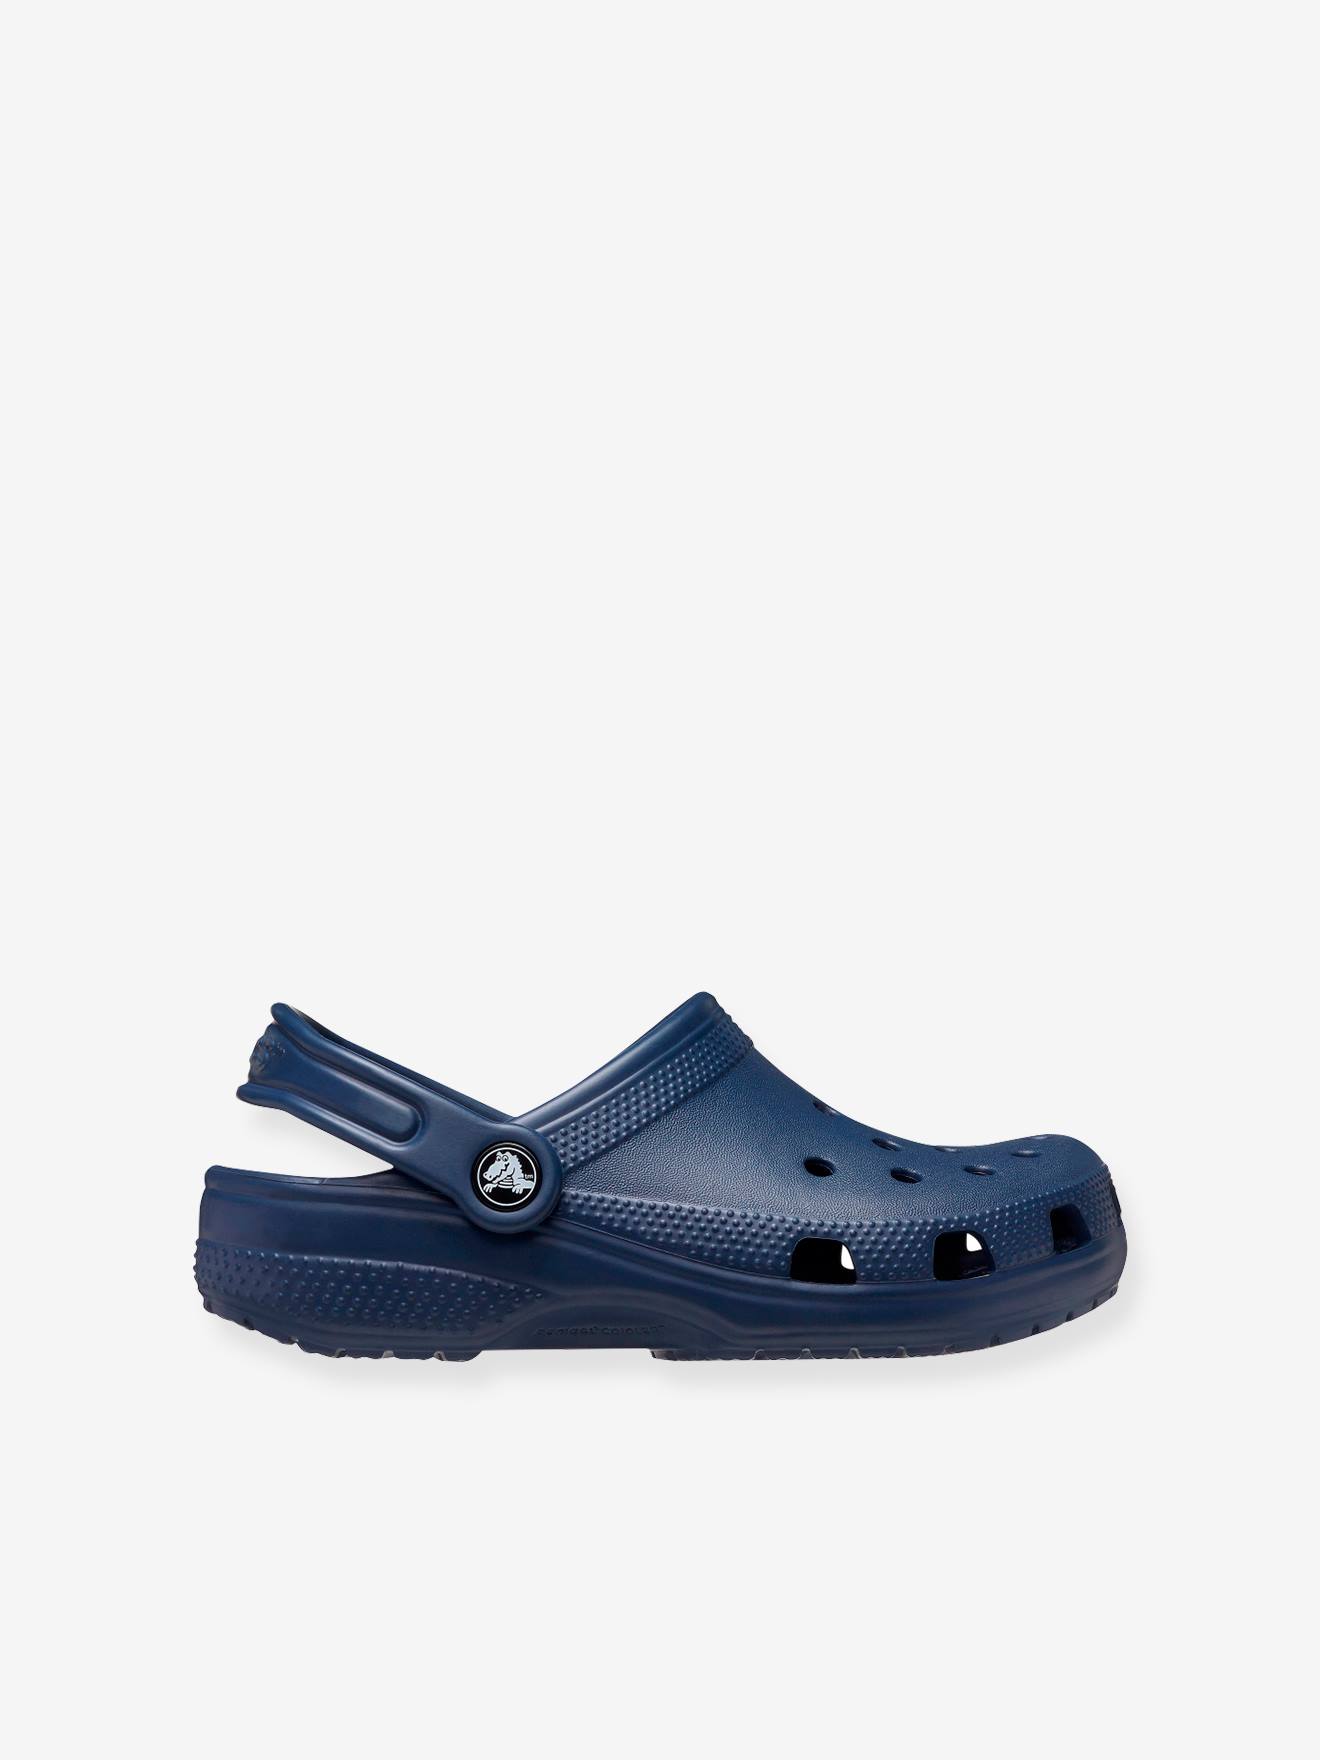 Schoenen Jongensschoenen Sandalen Youth navy blue crocs sandals new size 8 